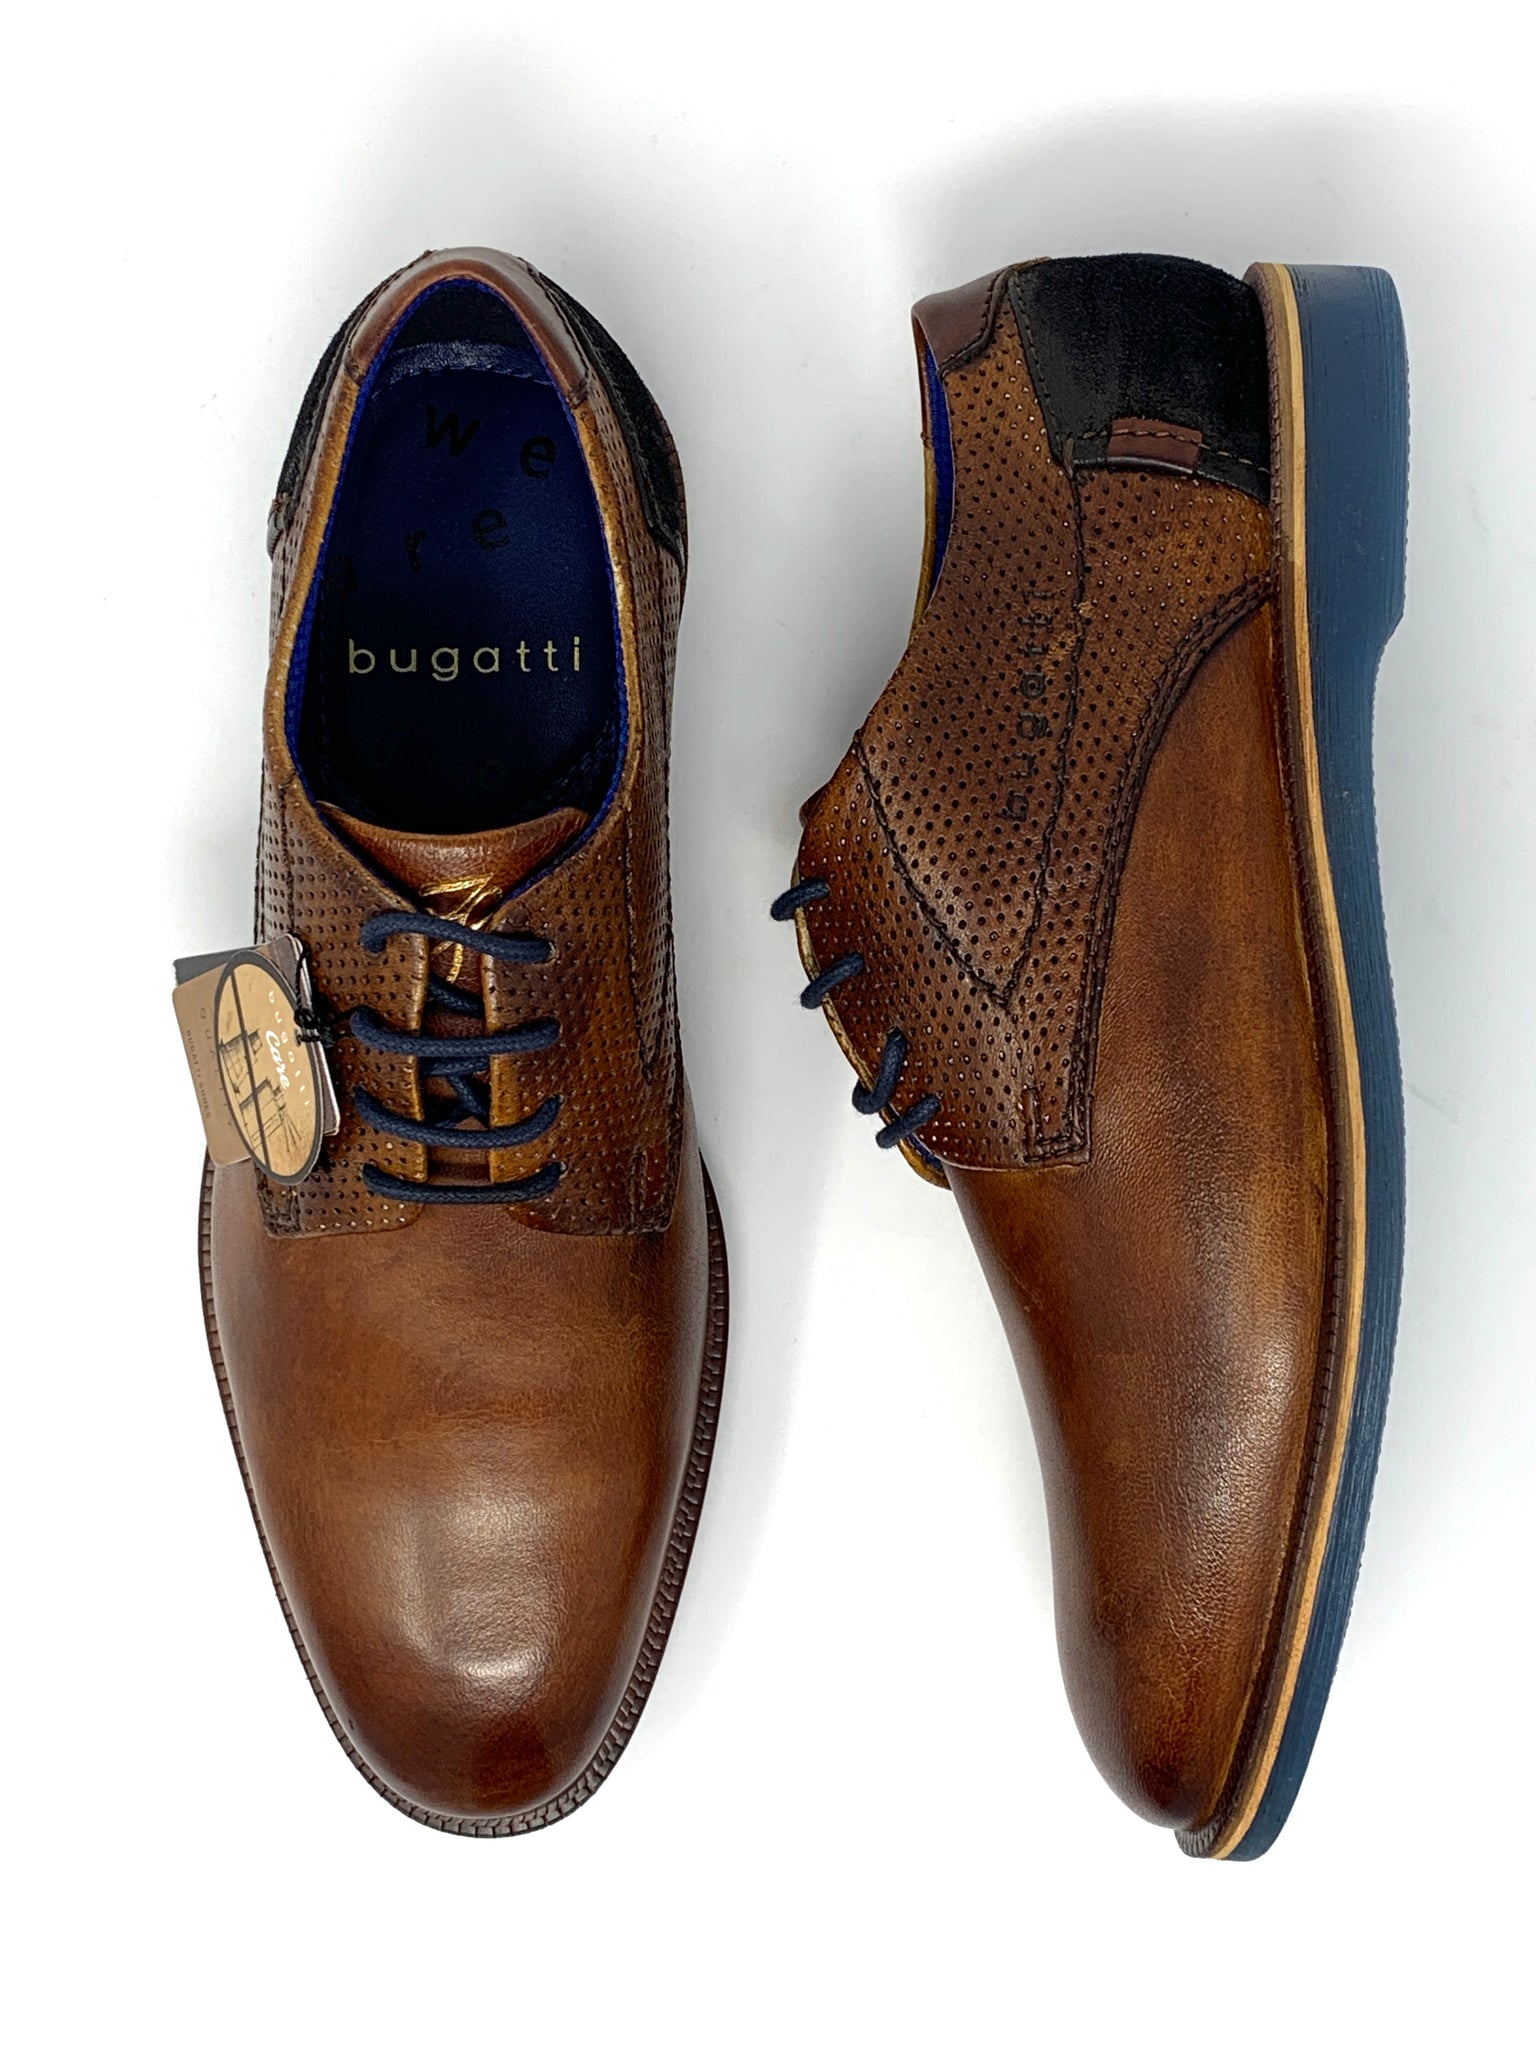 bugatti shoes sale